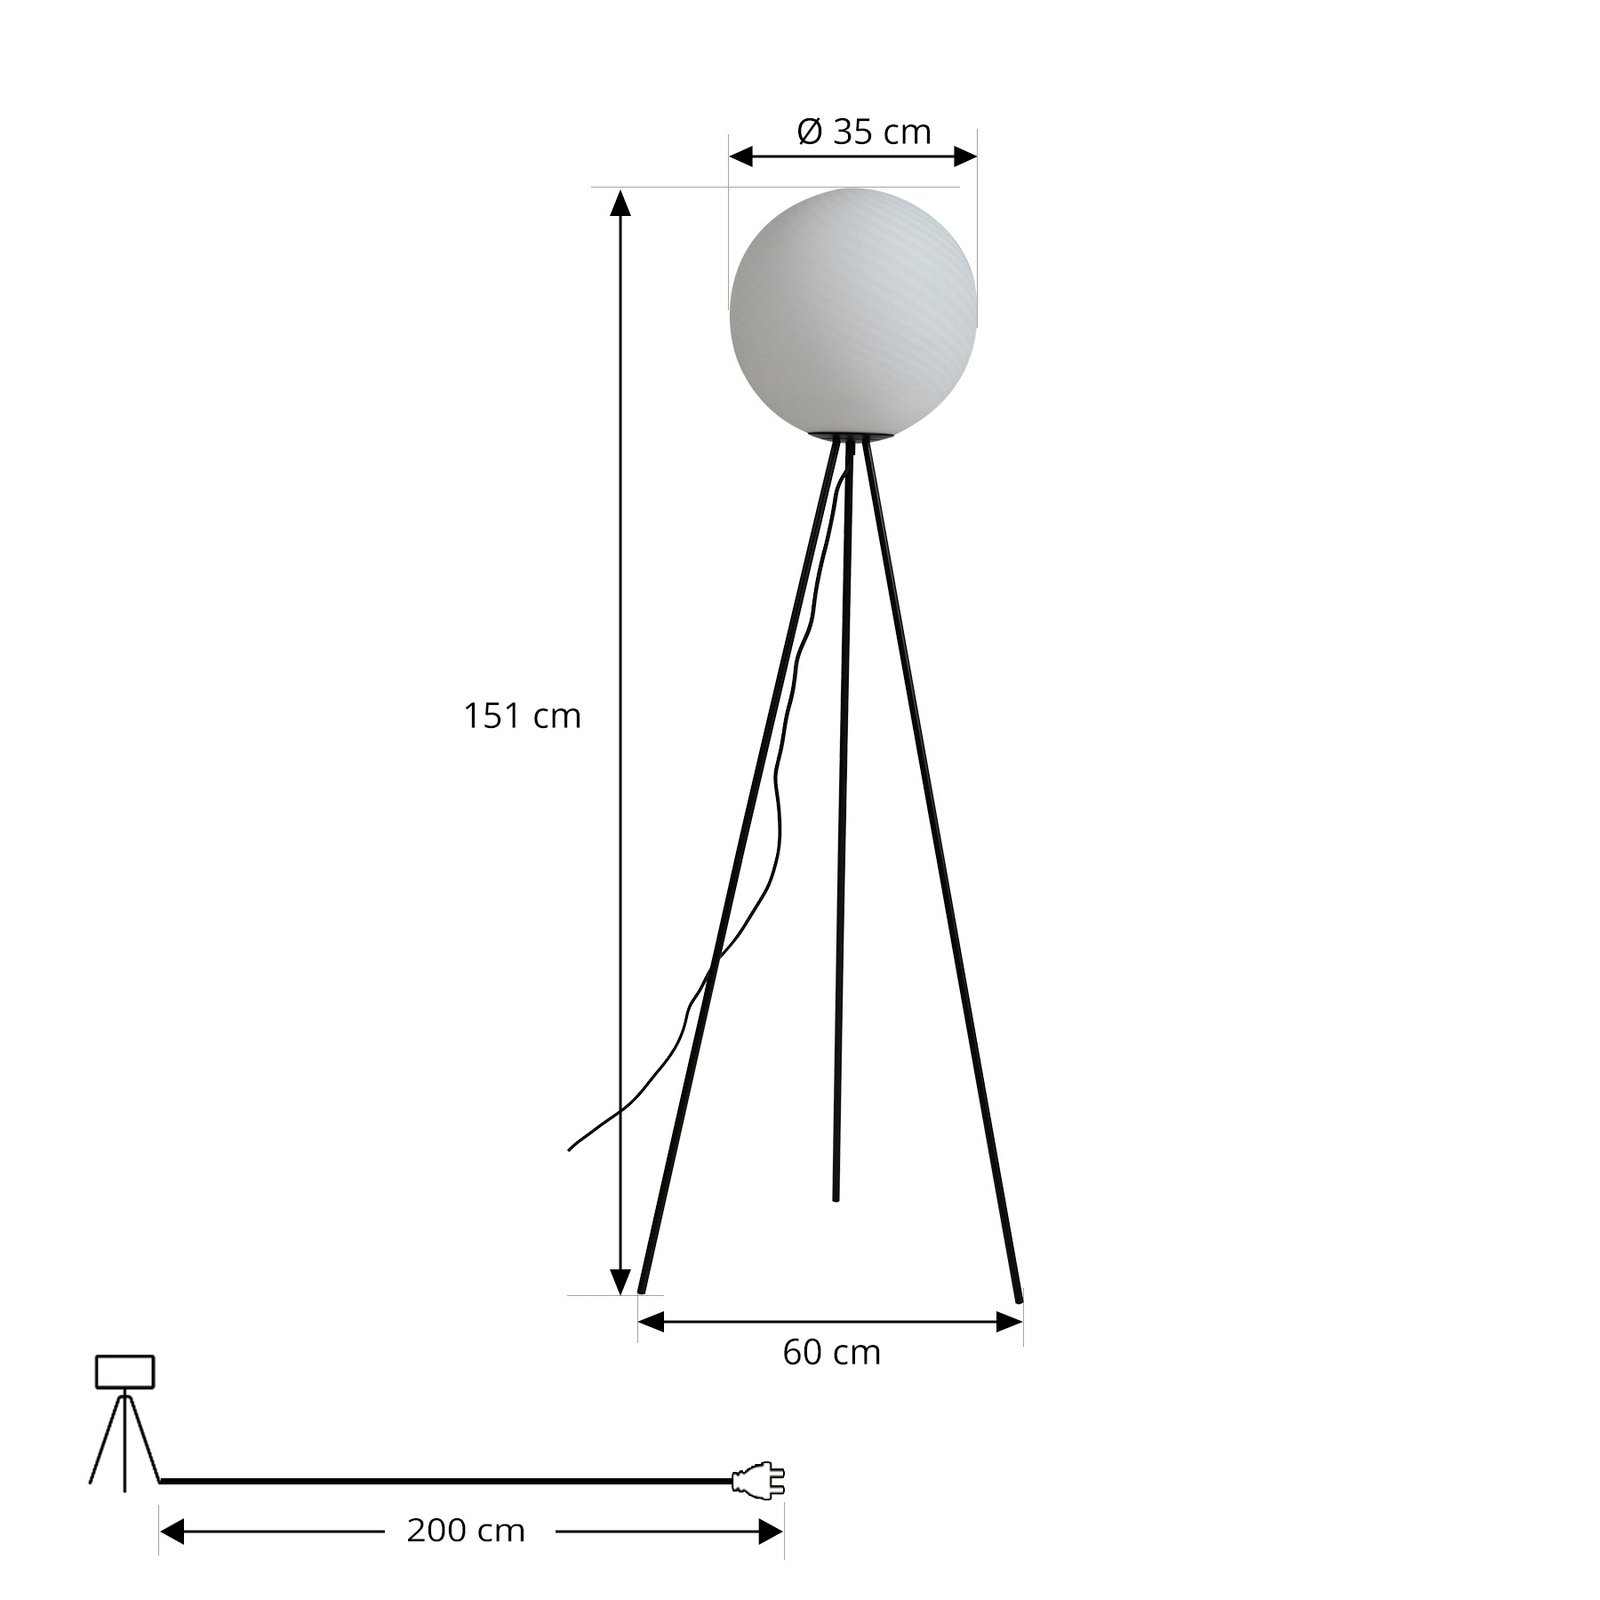 Lucande állólámpa Kestralia, fehér, üveg, Ø 35 cm, E27